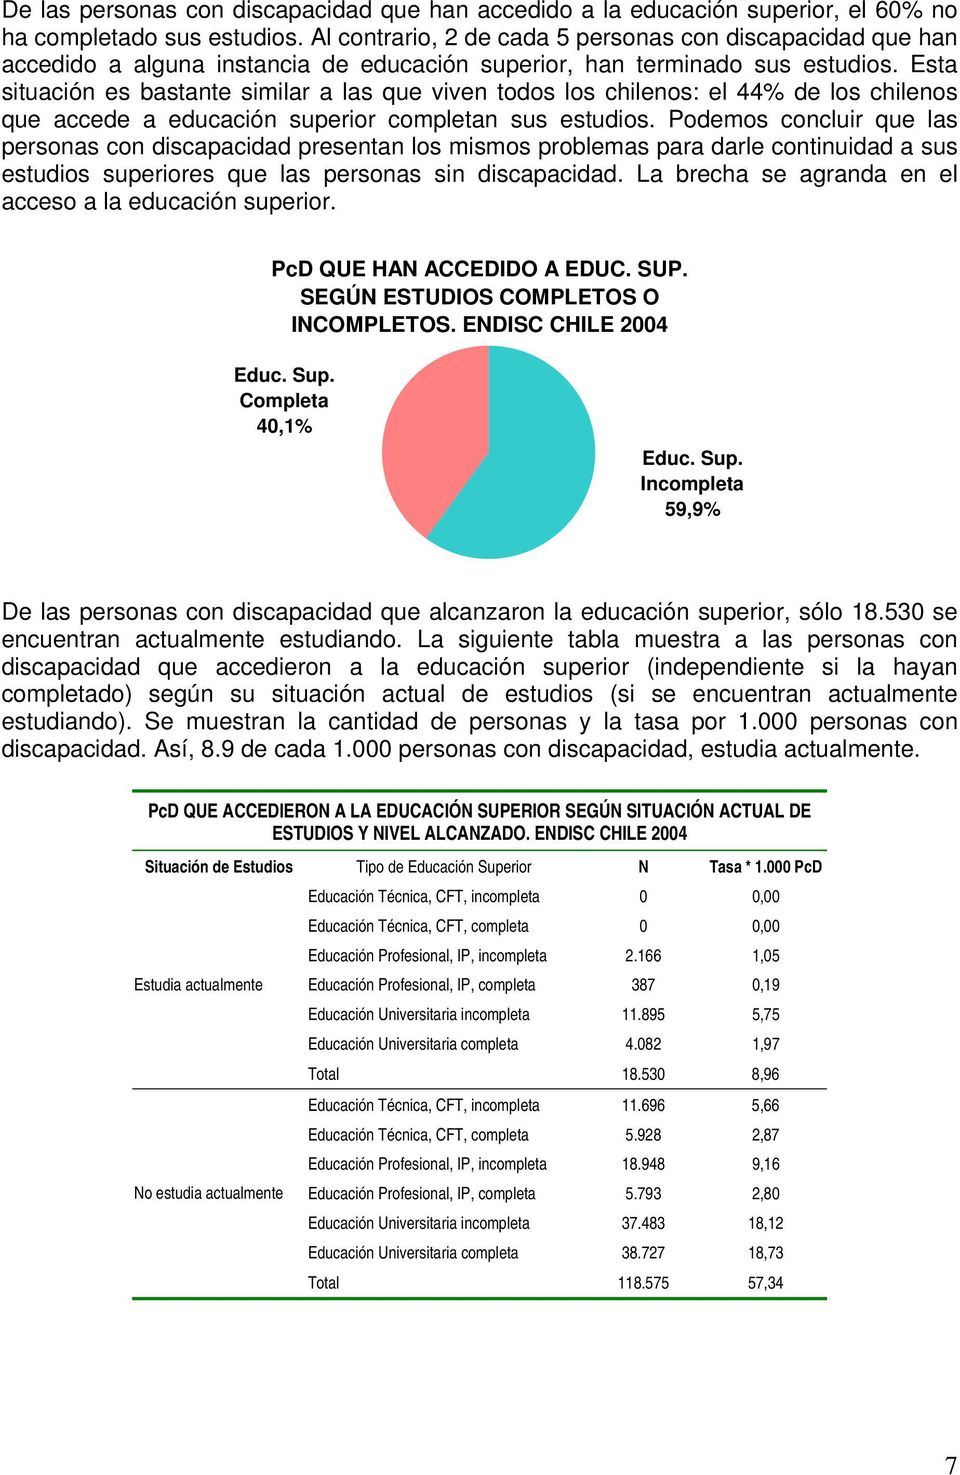 Esta situación es bastante similar a las que viven todos los chilenos: el 44% de los chilenos que accede a educación superior completan sus estudios.